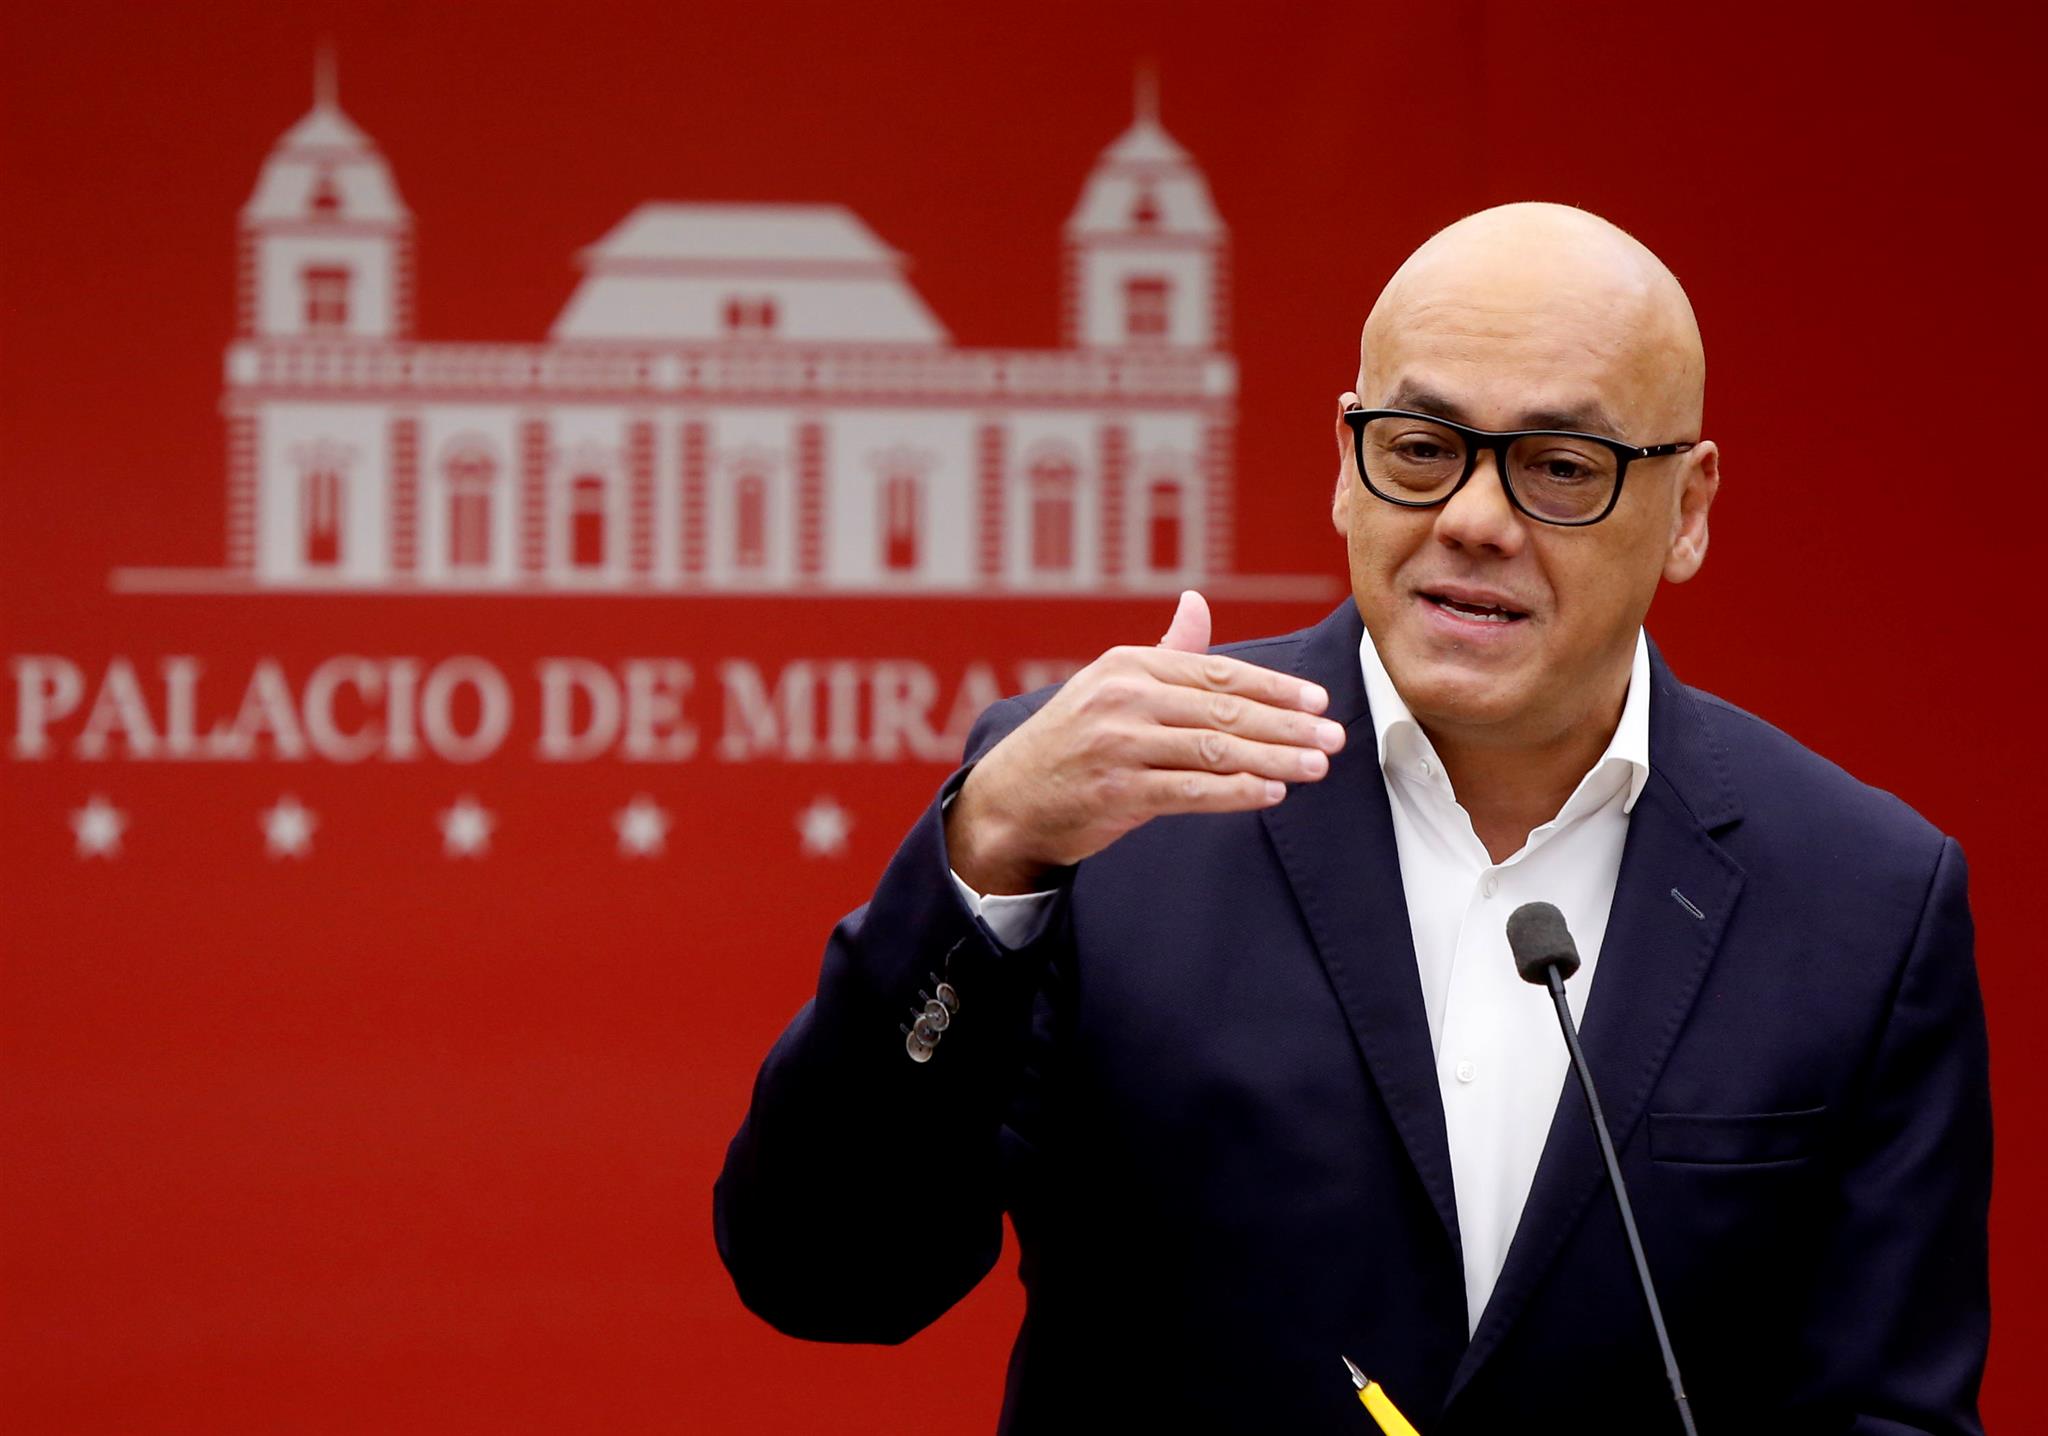 El ministro venezolano considera que el uso de tarjetones fotocopiados en las elecciones parlamentarias e interpartidistas de Colombia impiden la realización de una auditoría.